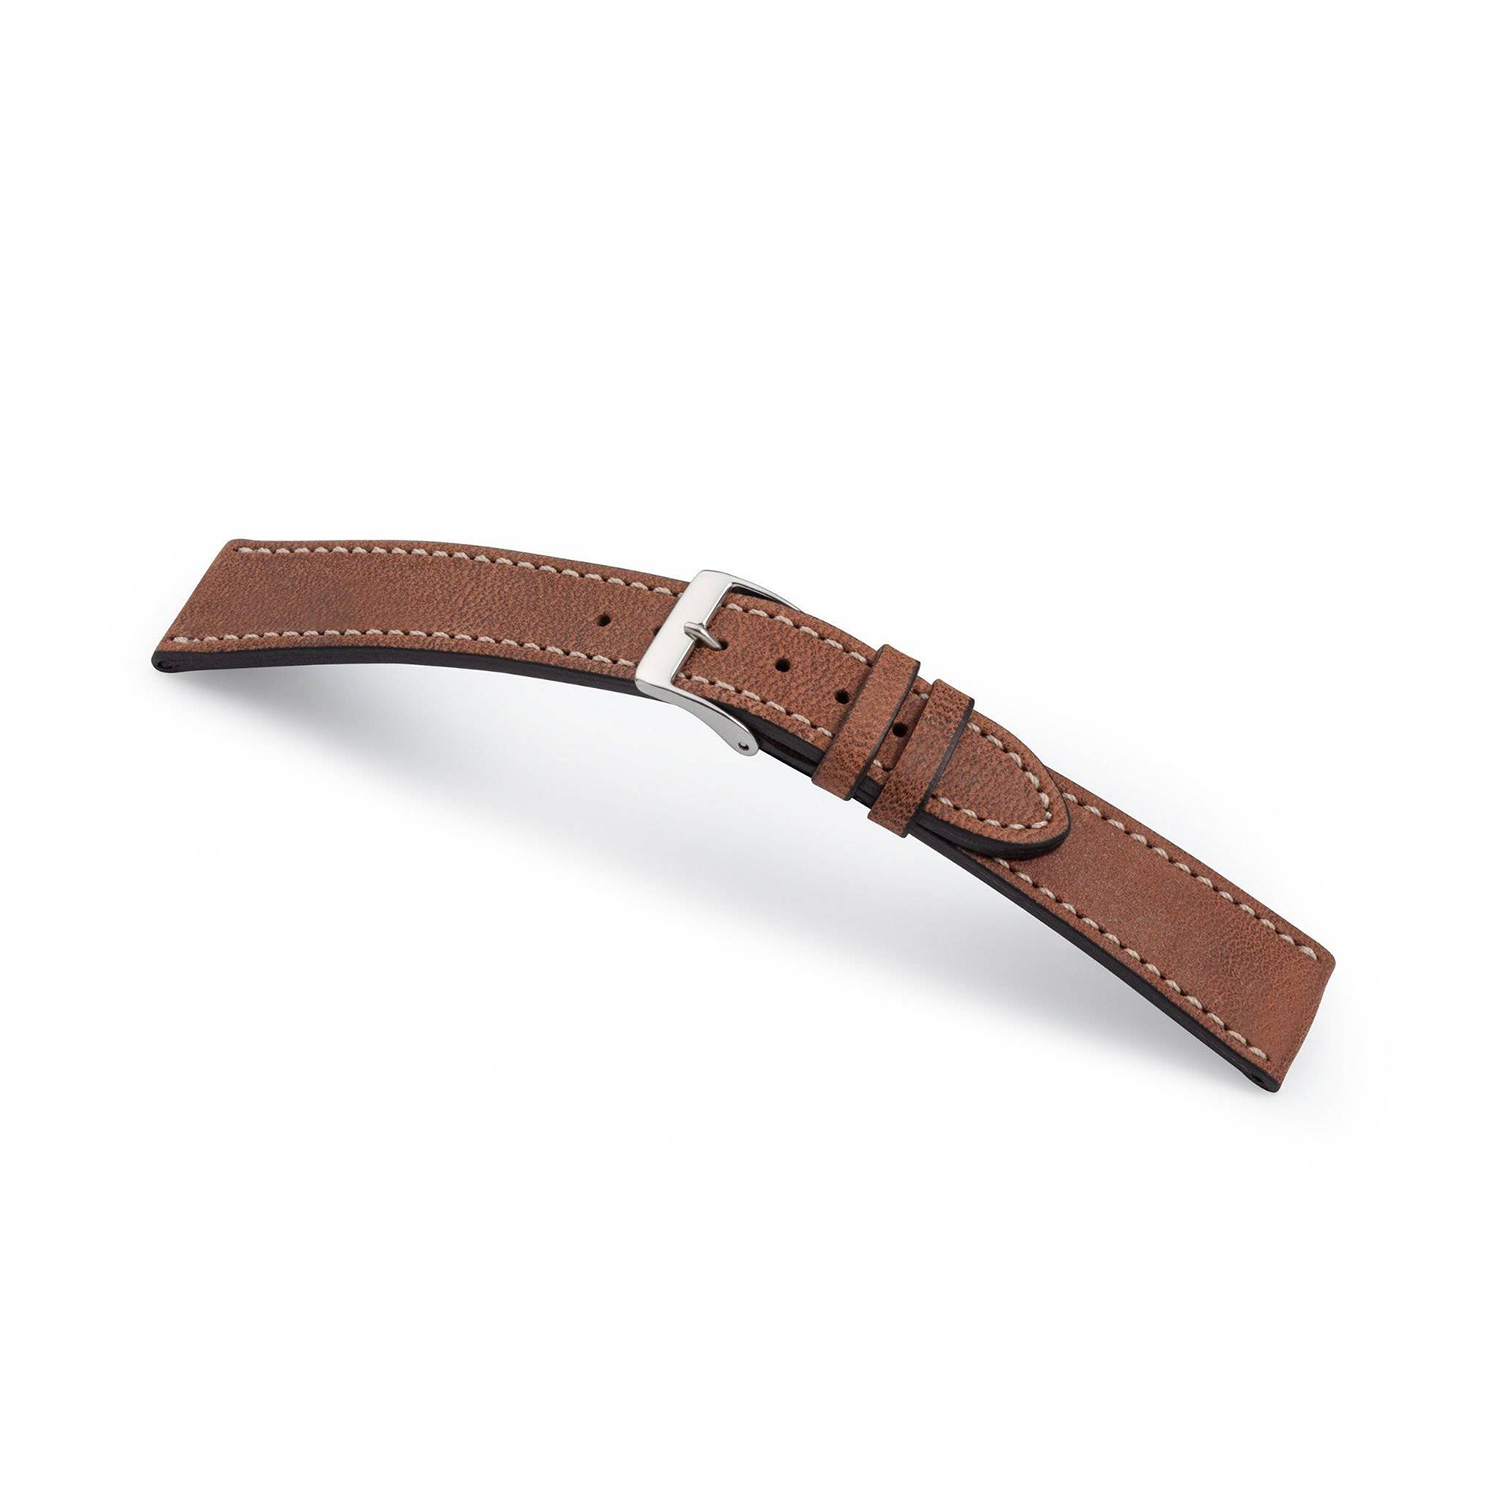 Manufakturwerk leather strap Hoheluft brown 21/18